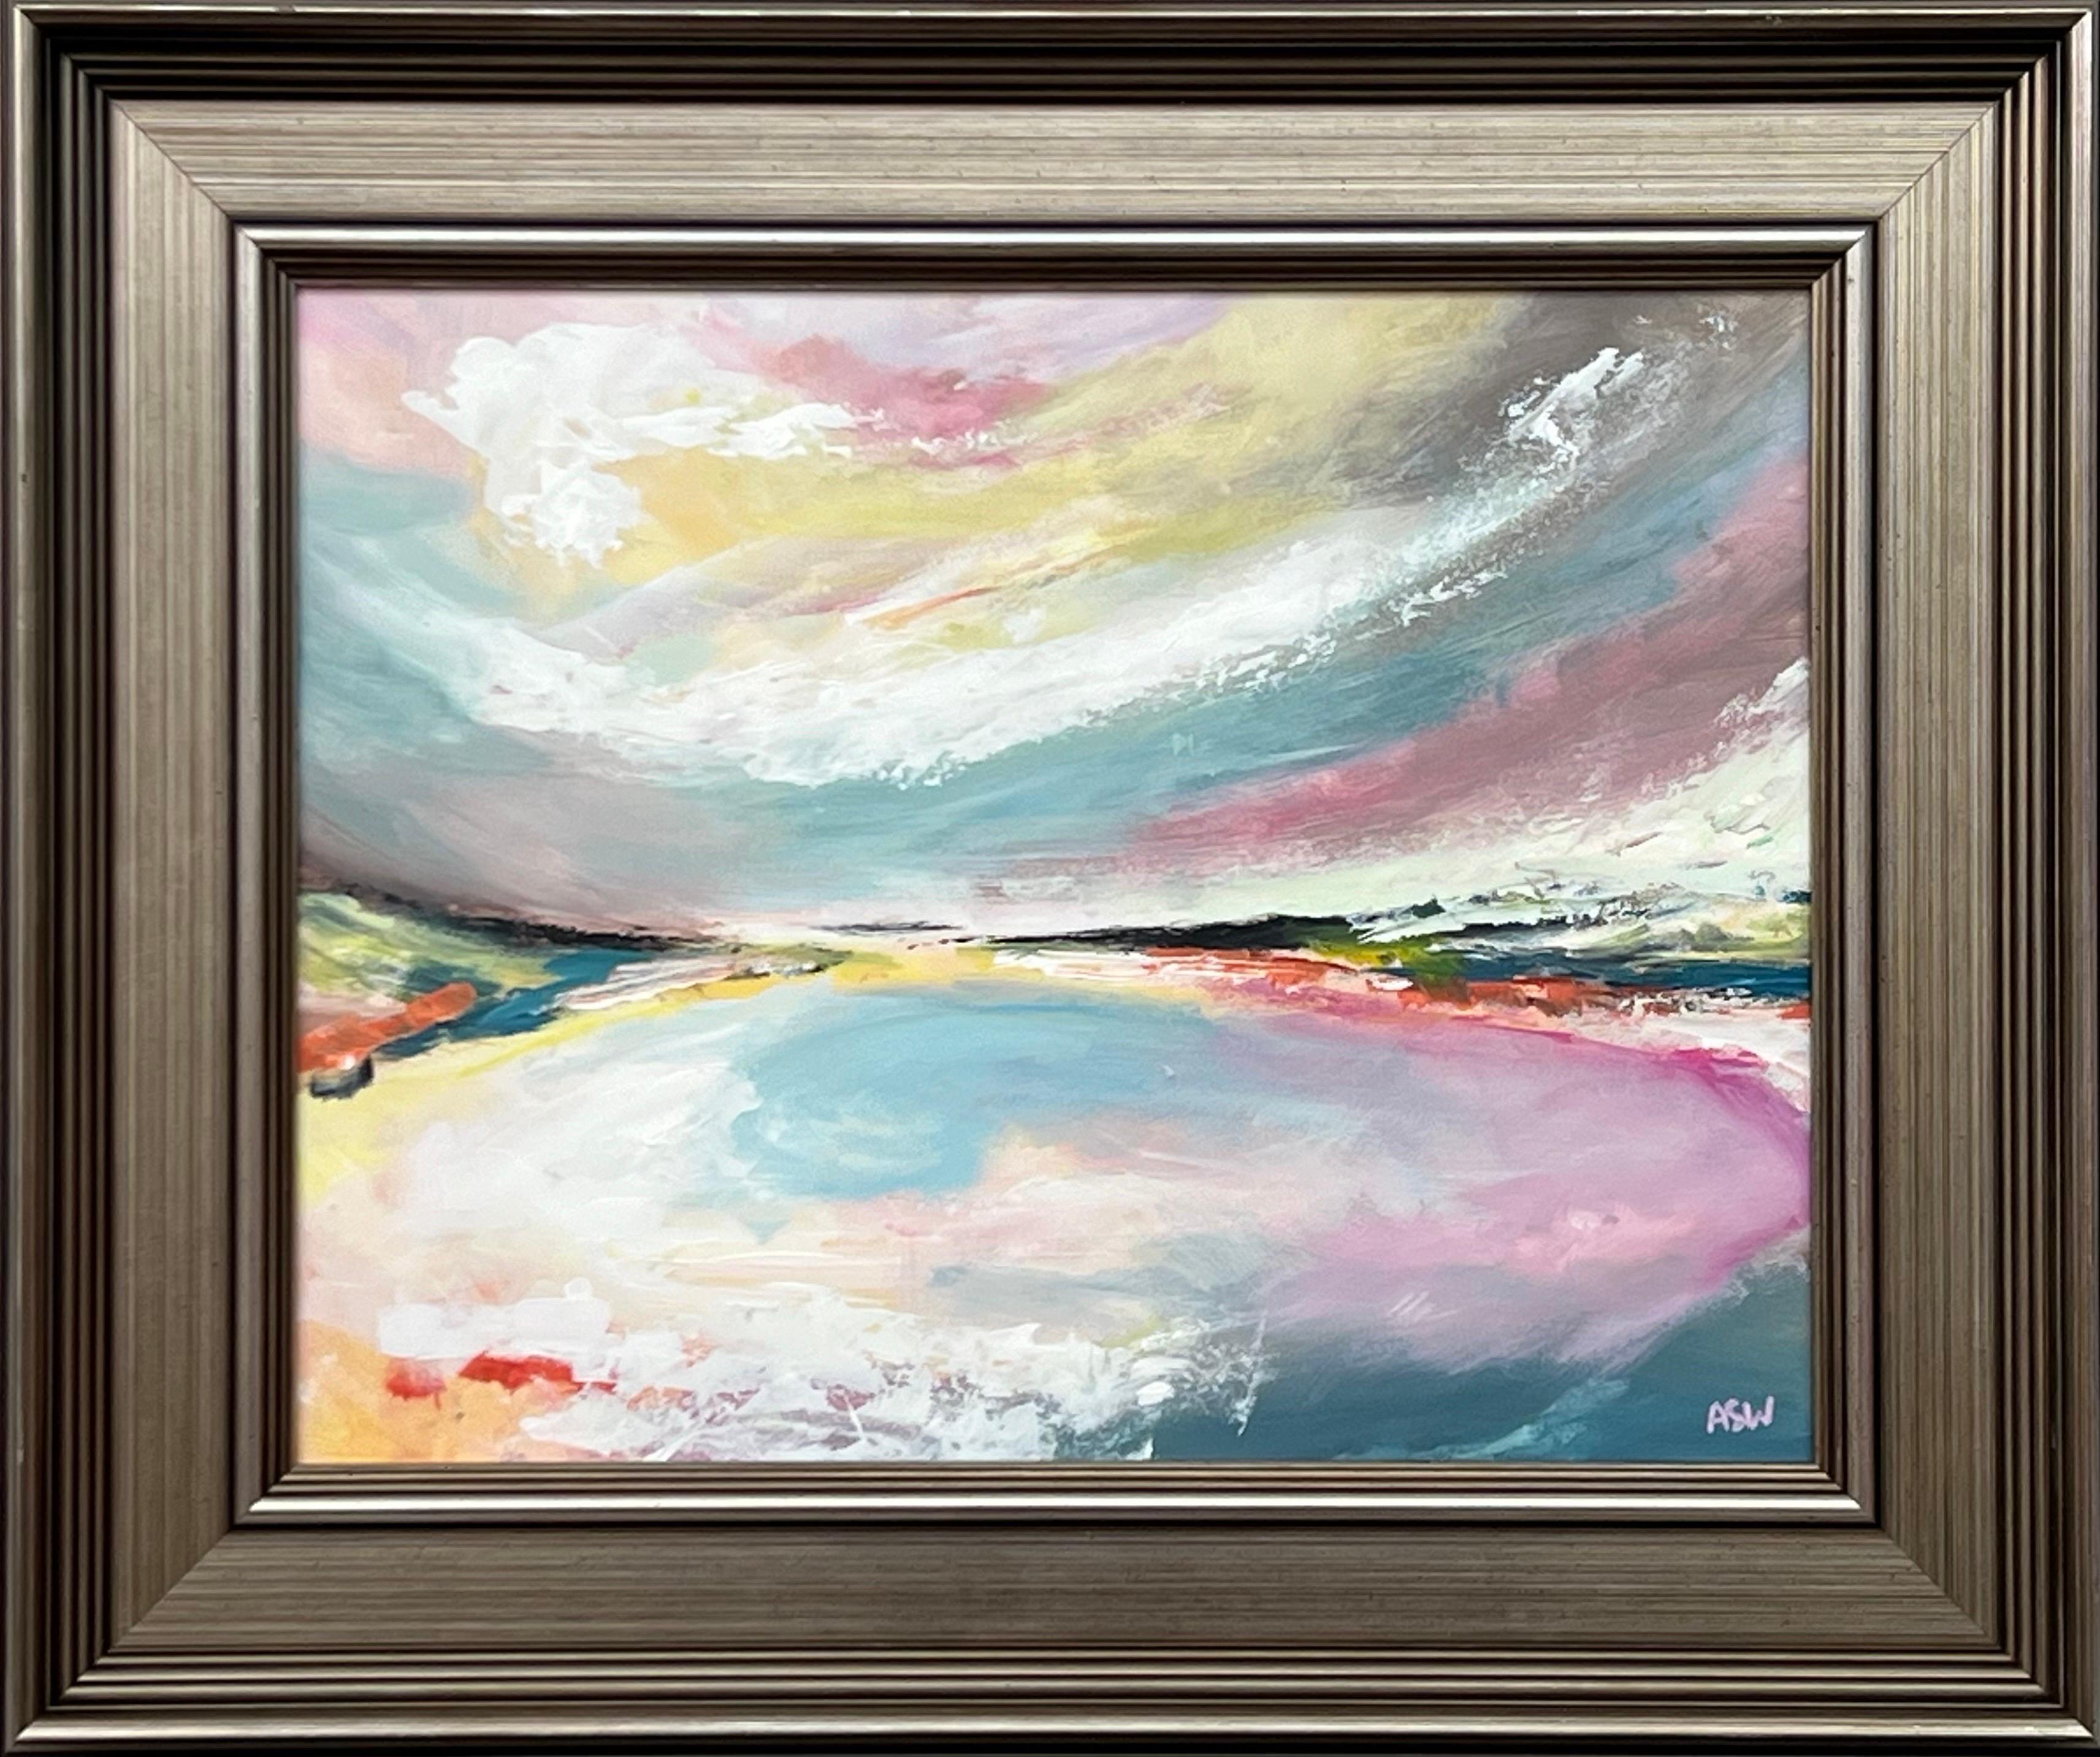 Abstract Painting Angela Wakefield - Paysage marin abstrait avec ciel bleu rose et blanc par un artiste britannique